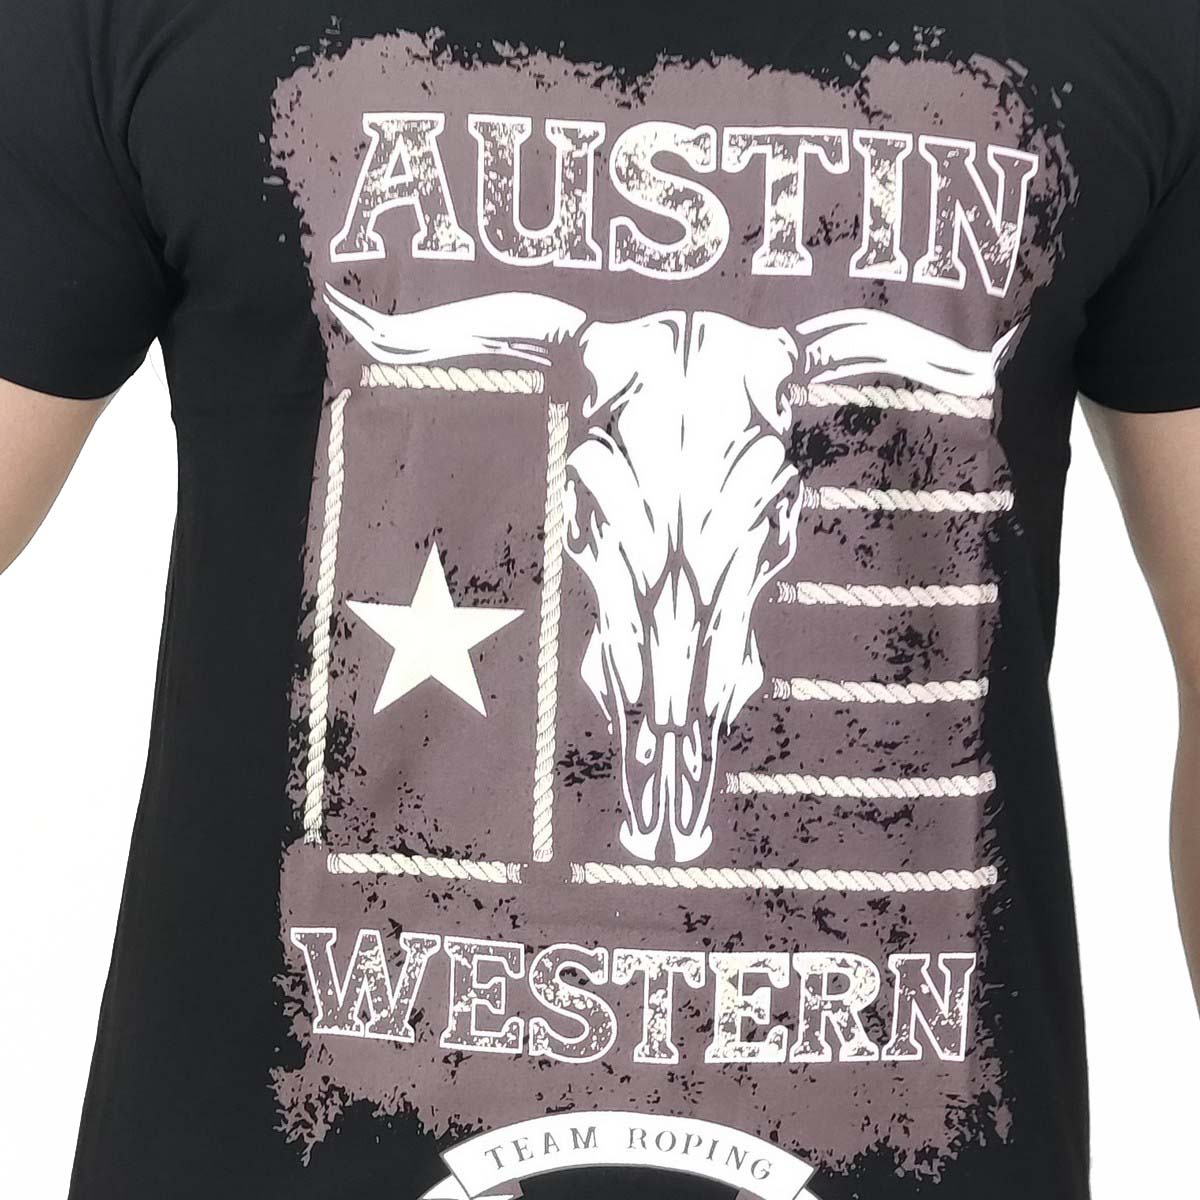 Camiseta Austin Western Masculina Preta Estampa Marrom - Foto 2